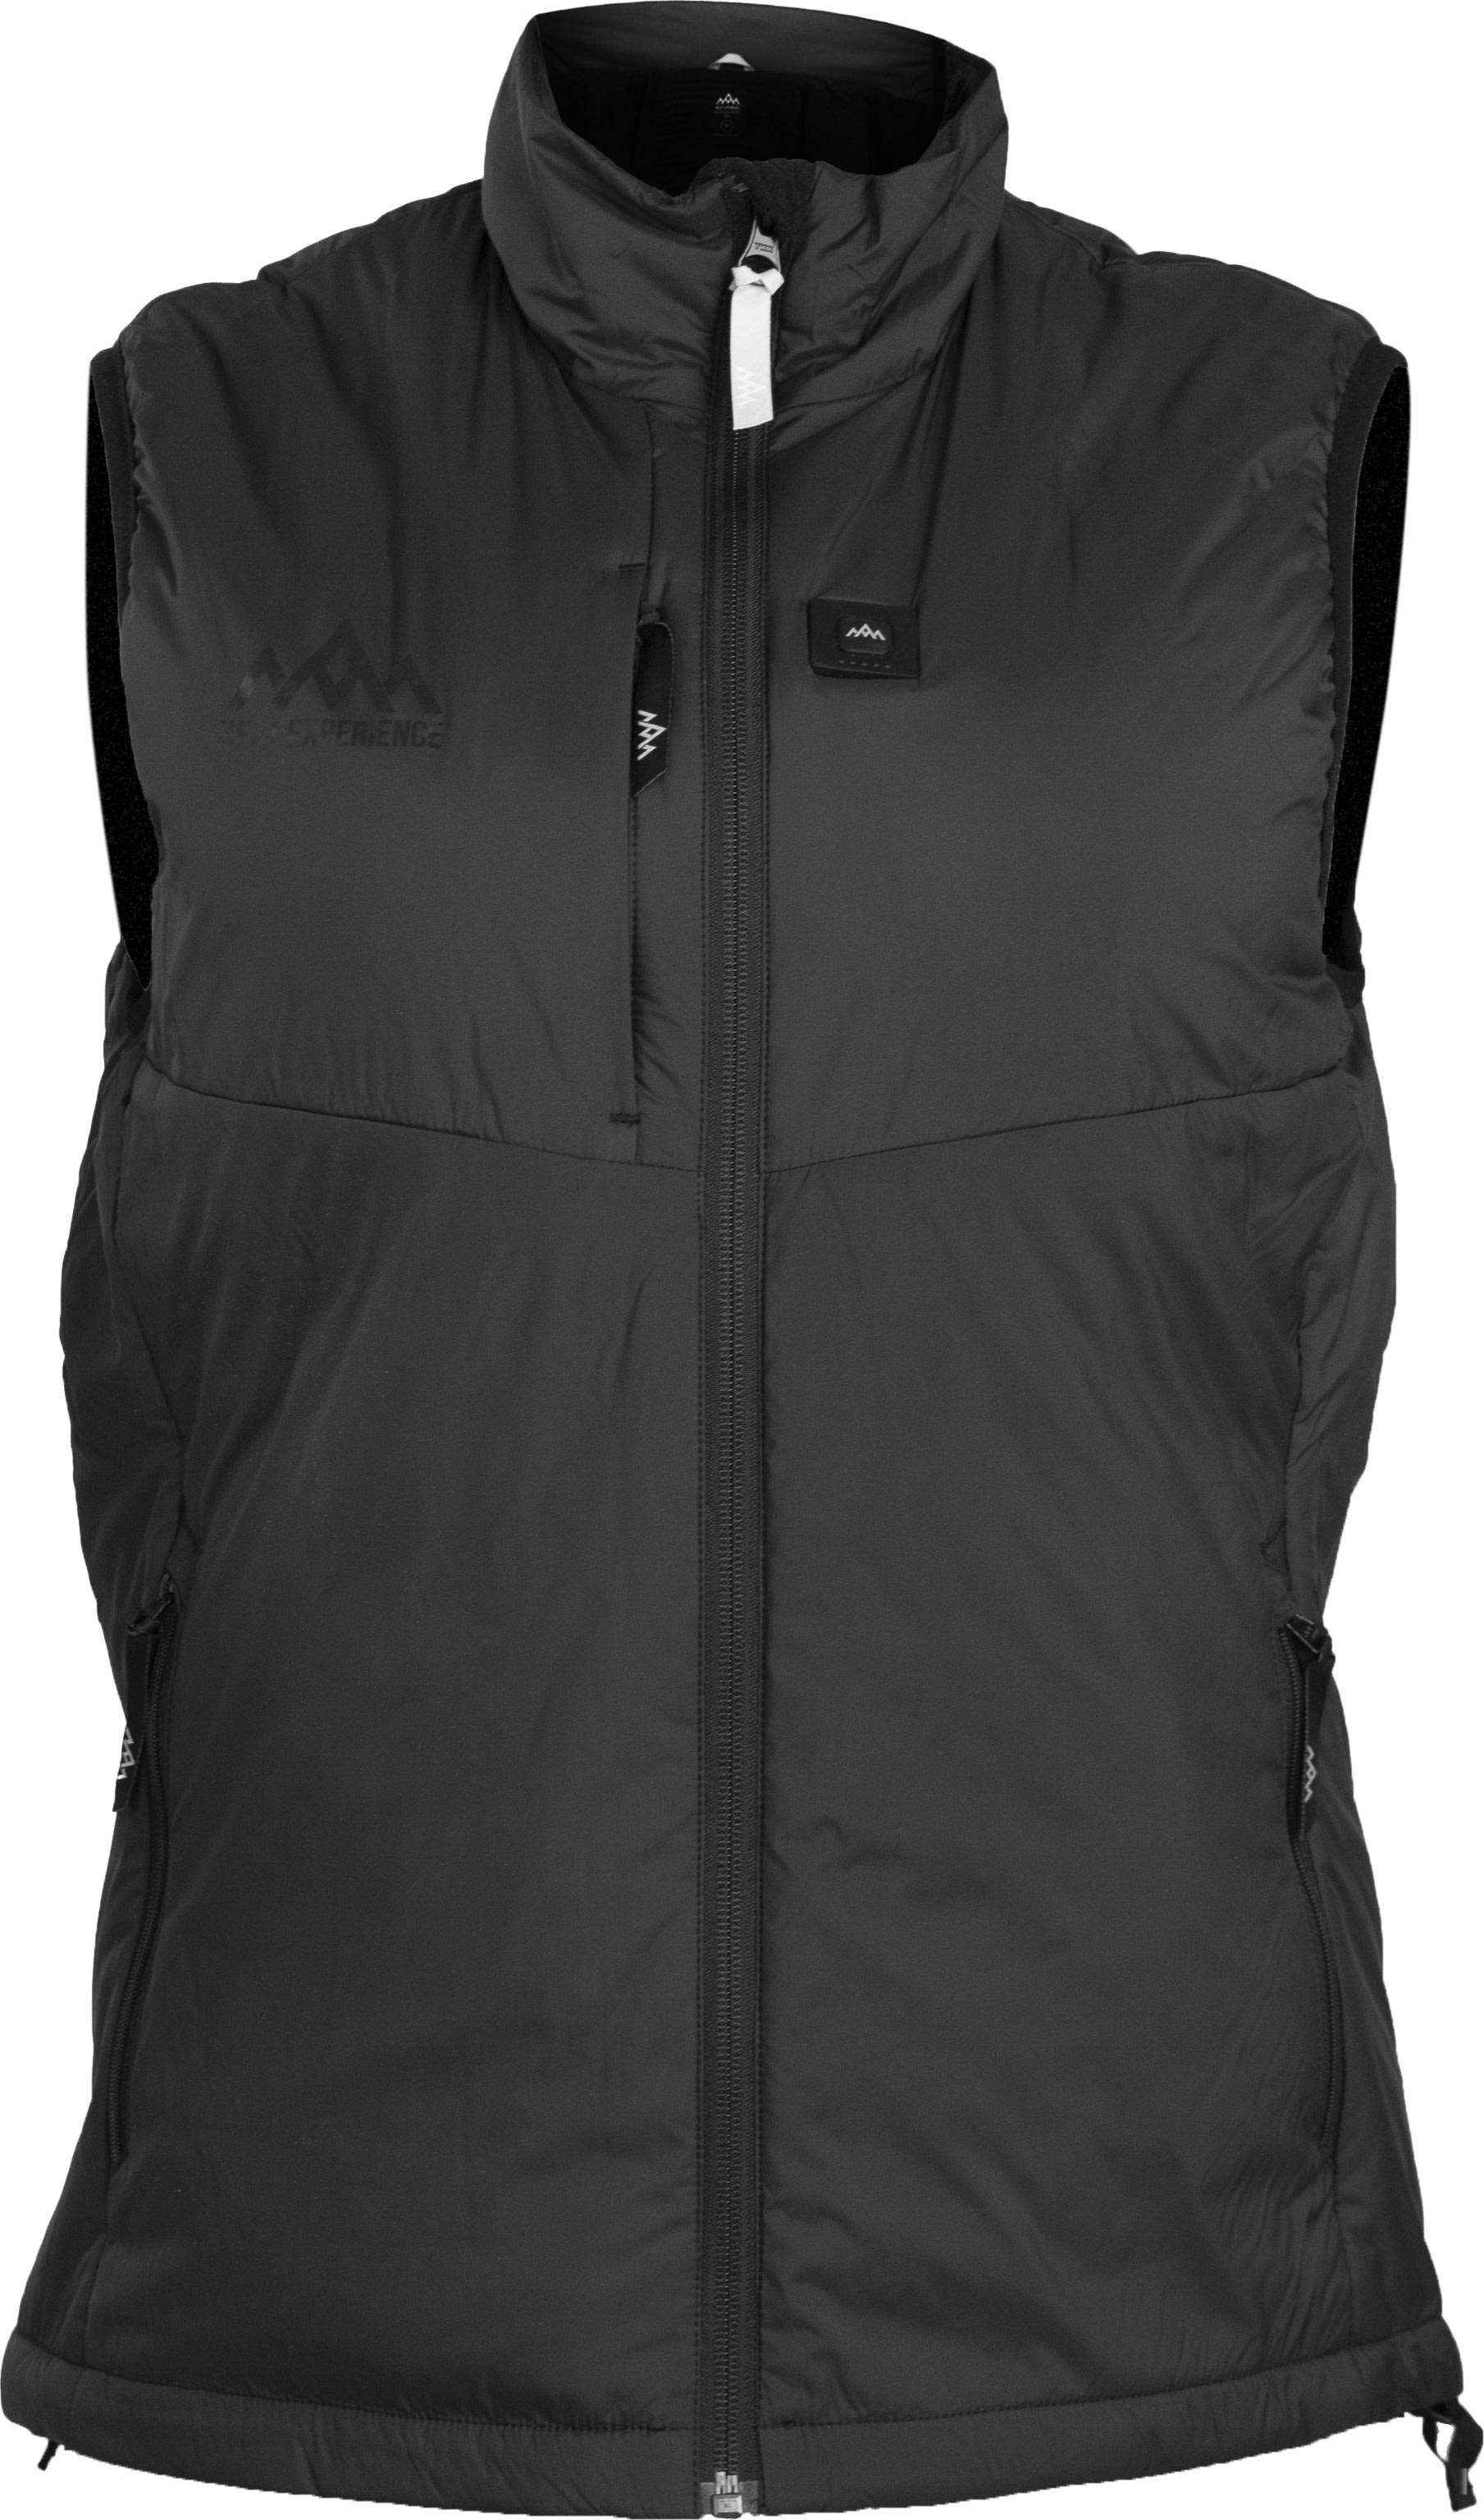 Heat Experience Women’s Heated Outdoor Vest Black